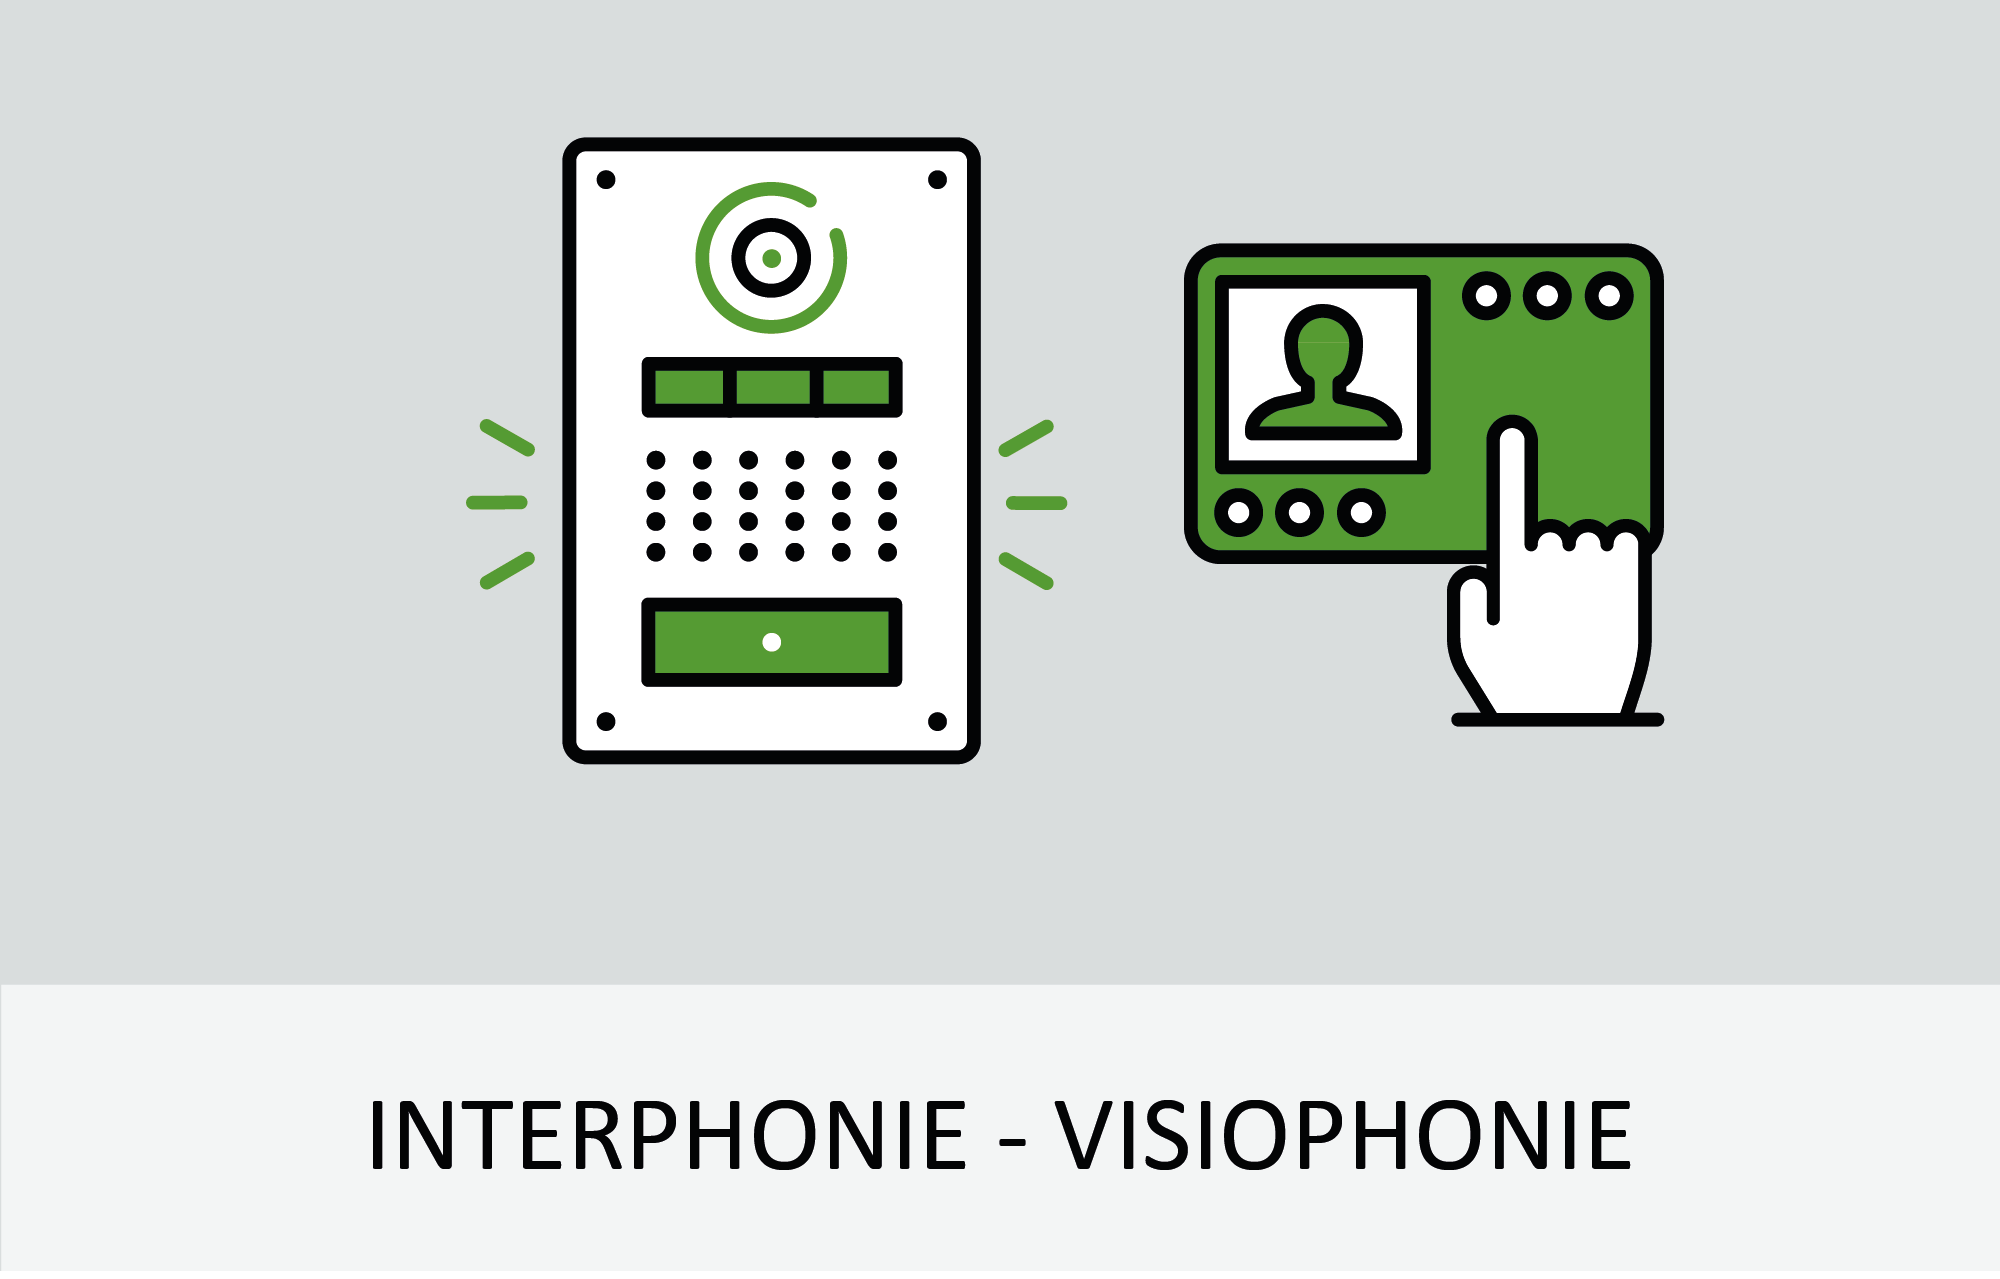 Interphonie - visiophonie des motorisations de portails